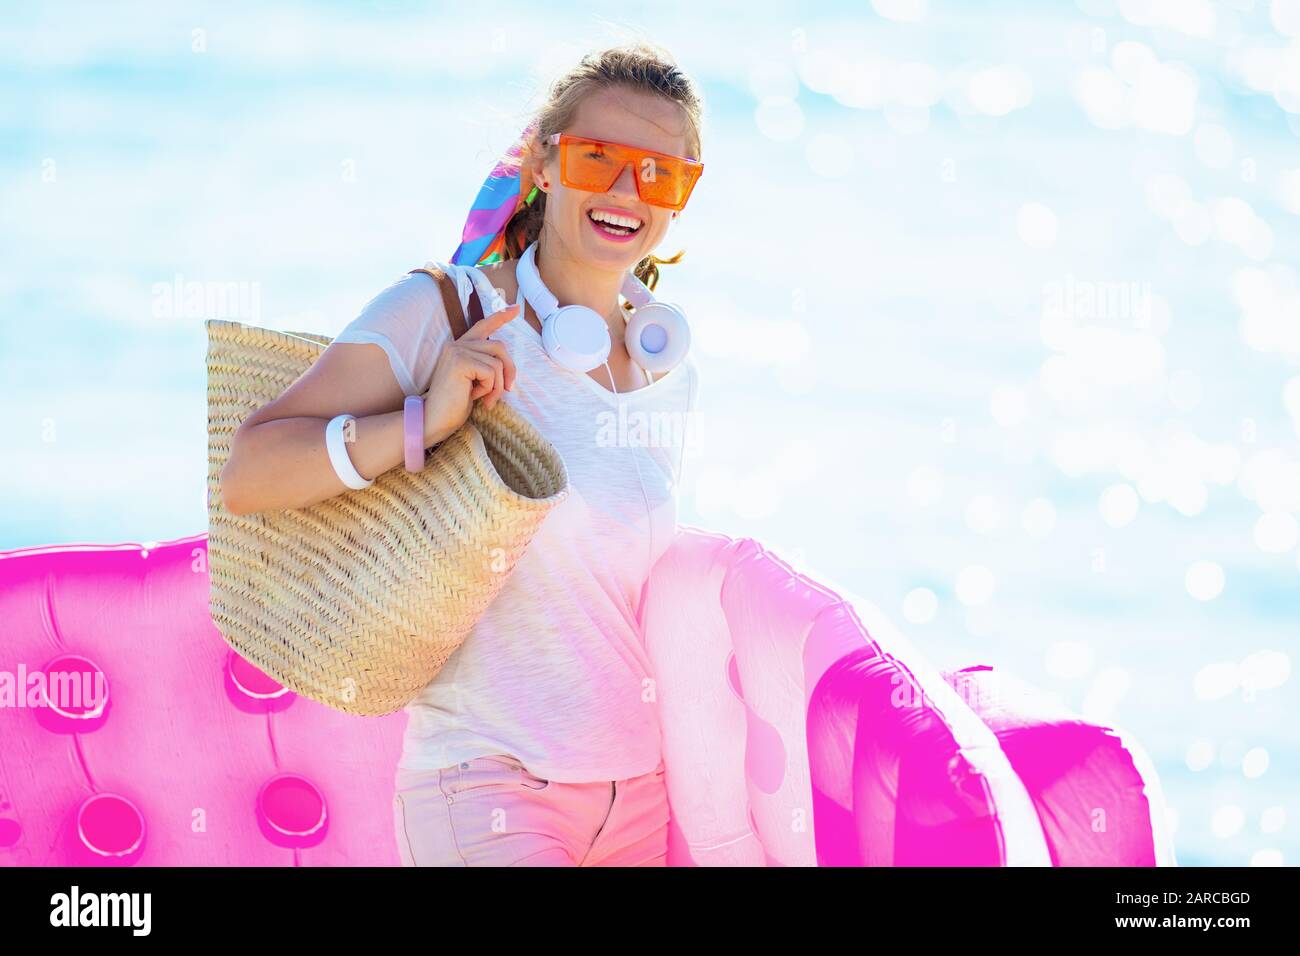 Portrait d'une femme souriante et branchée dans un t-shirt blanc et un short rose avec sac de paille de plage sur le front de mer tenant un matelas gonflable. Banque D'Images